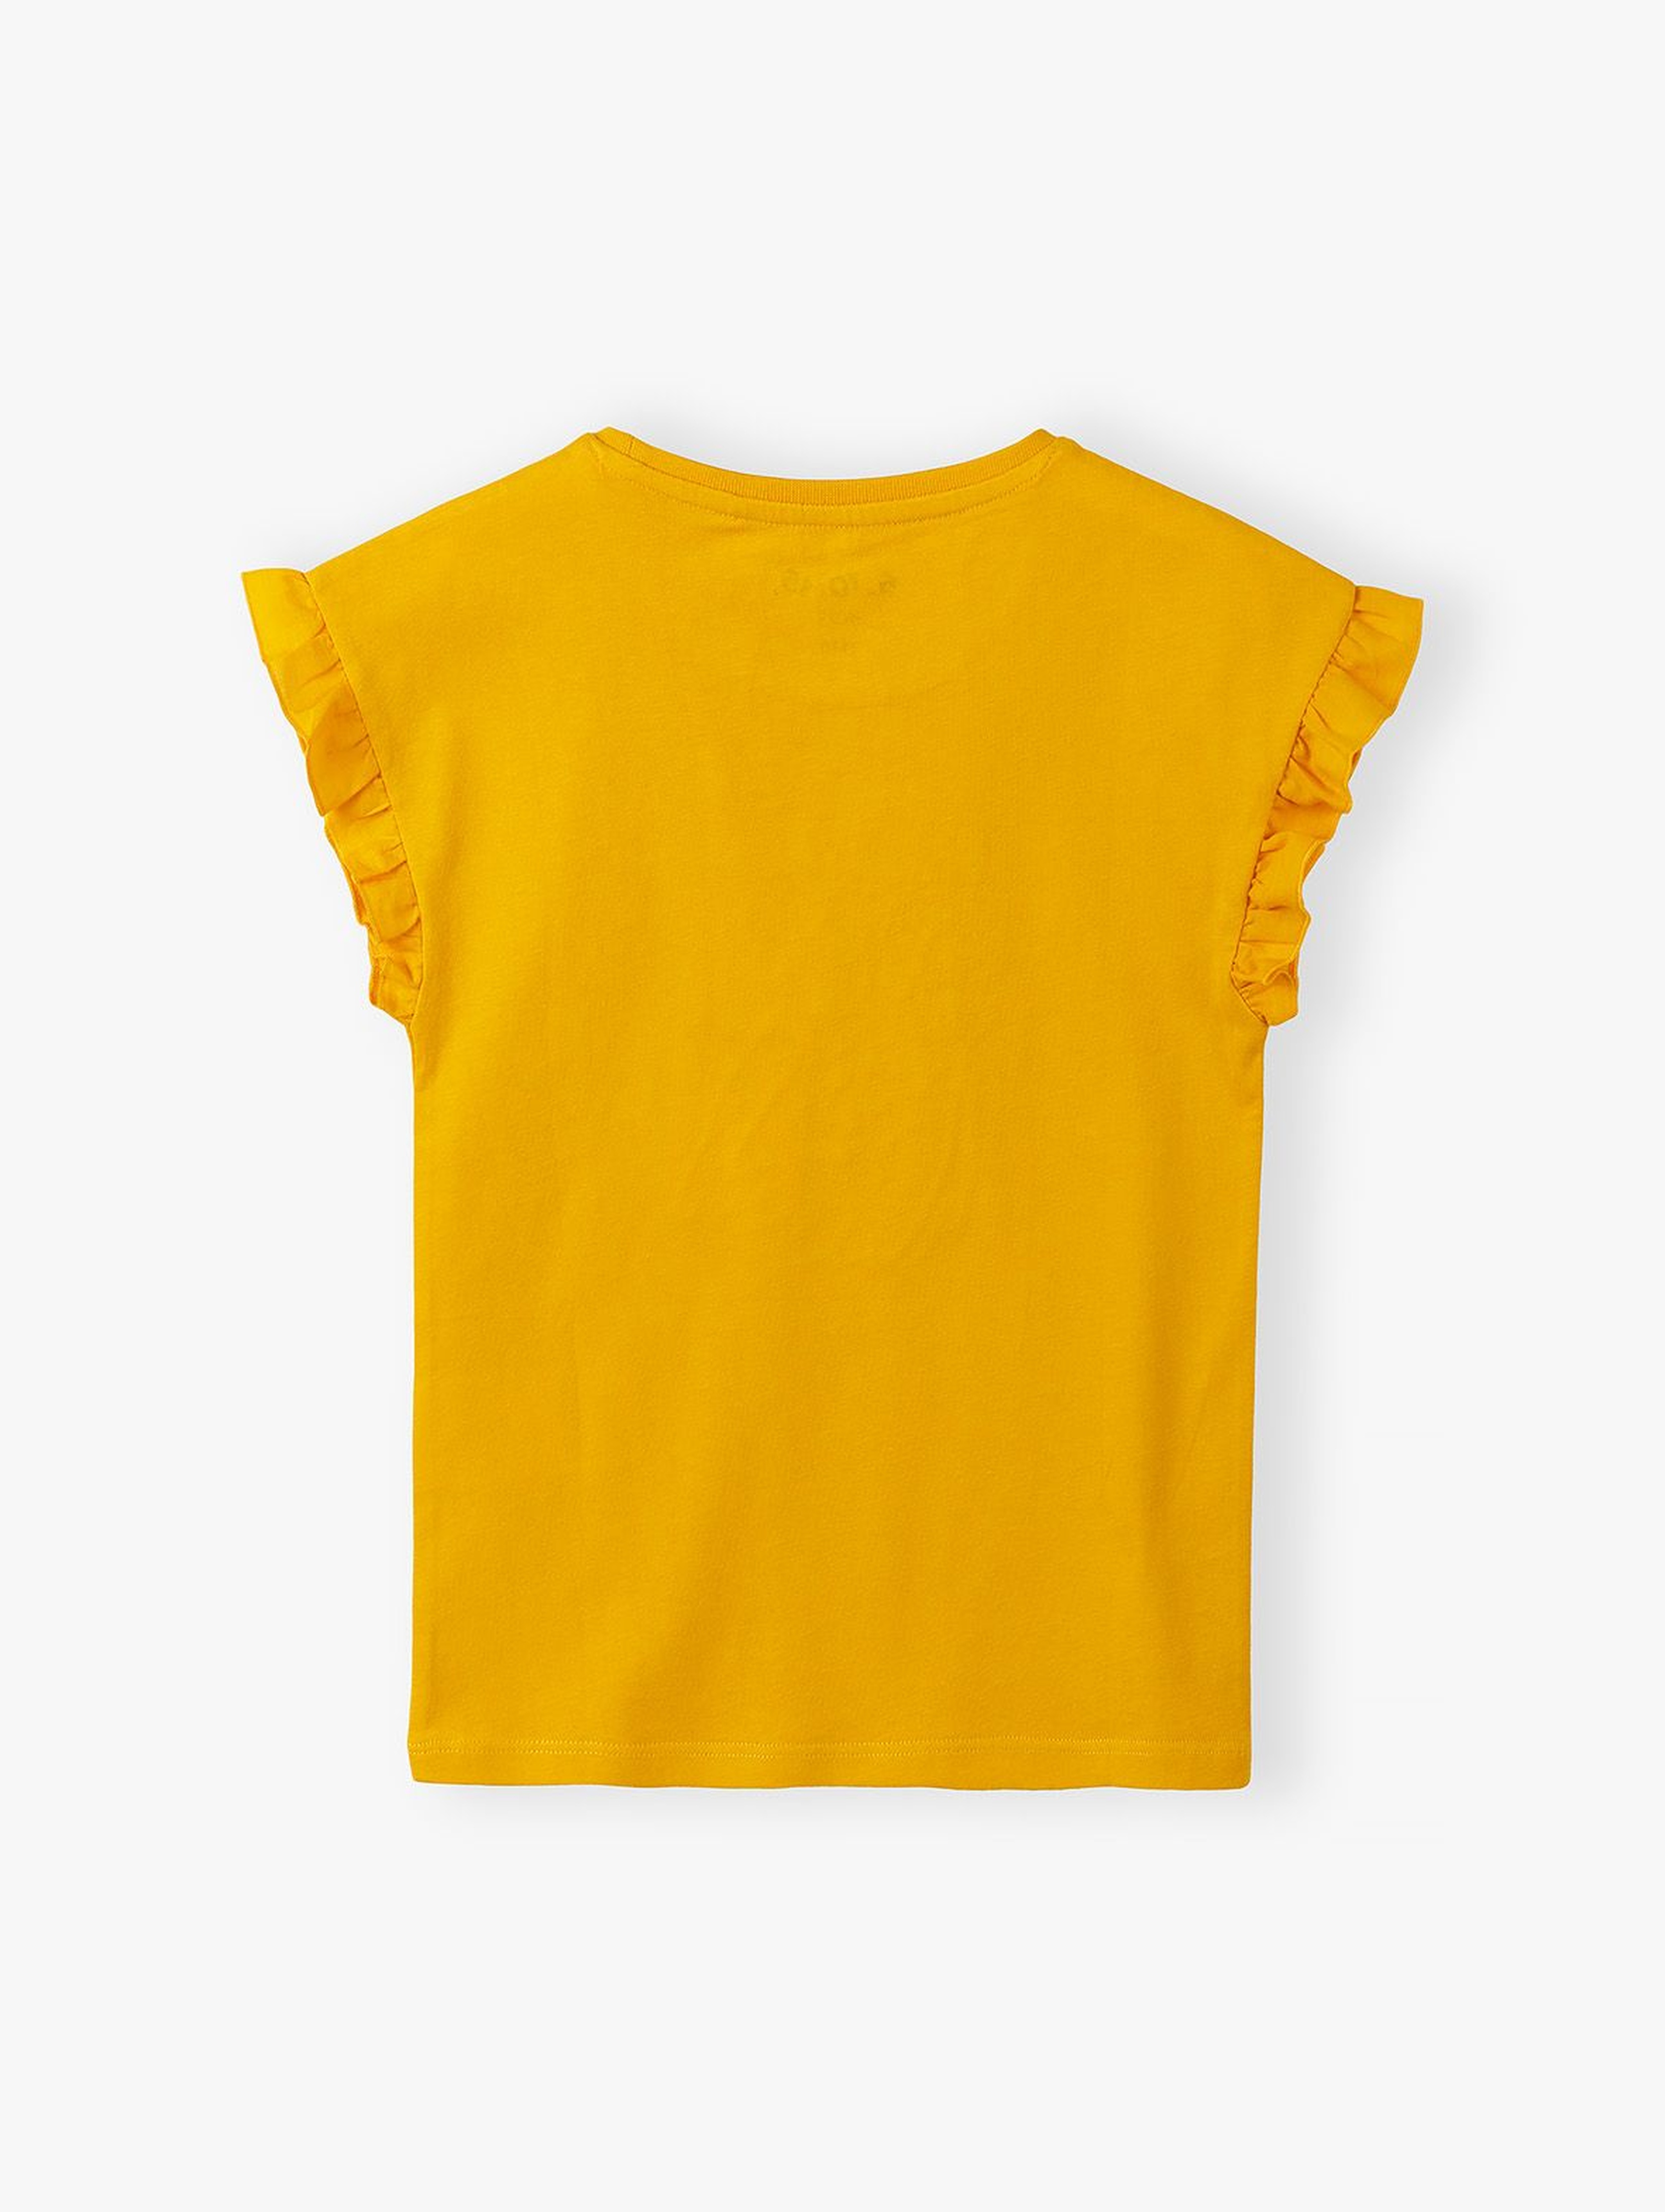 Koszulka dla dziewczynki z falbanką przy rękawach